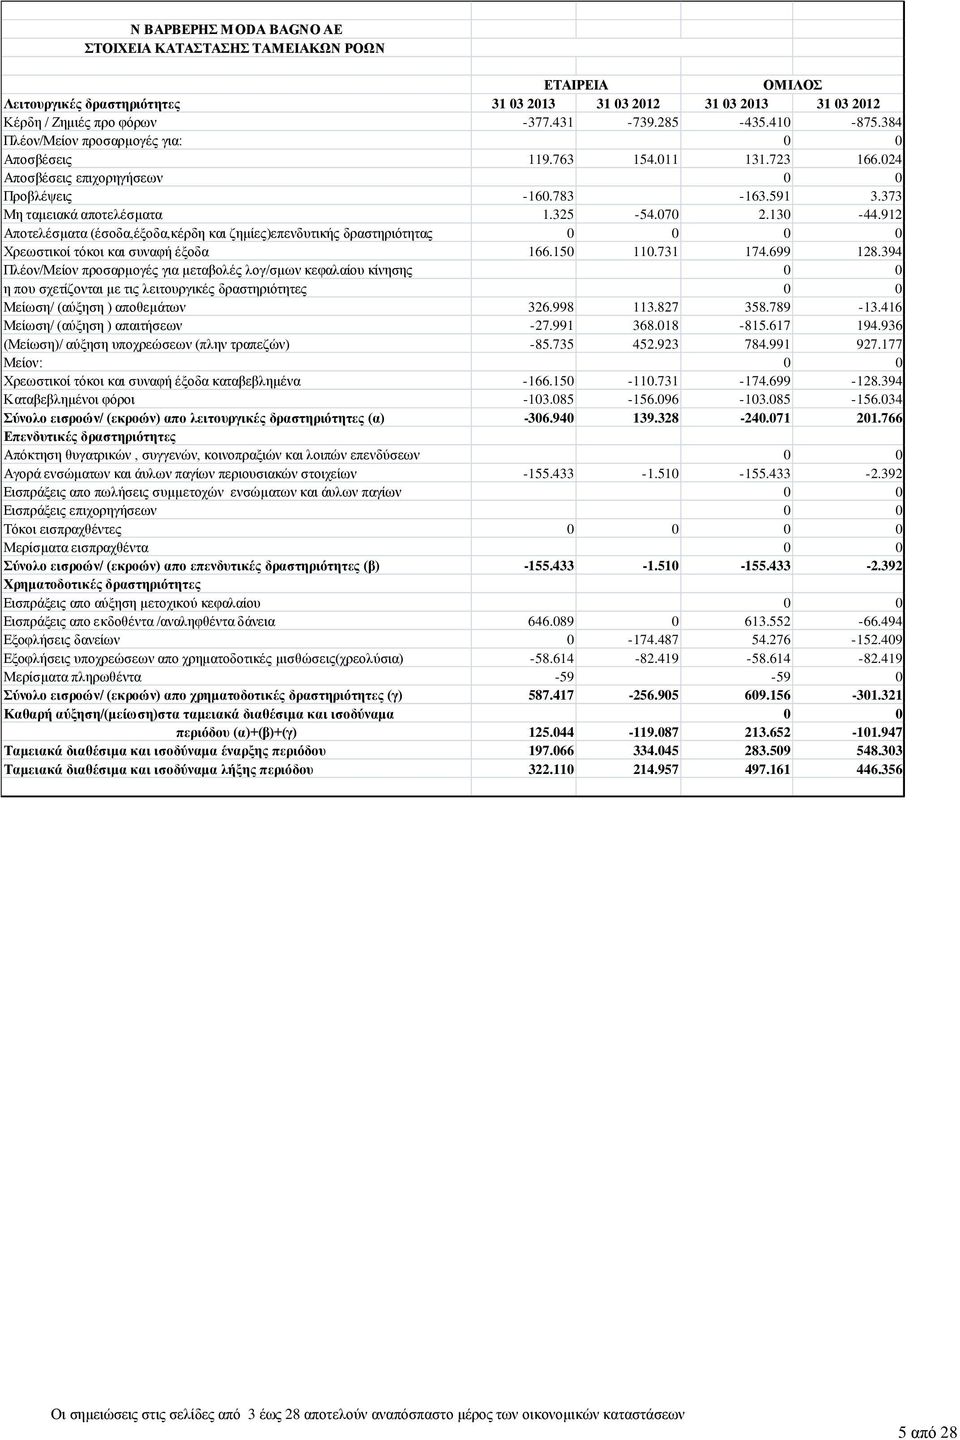 912 Αποτελέσματα (έσοδα,έξοδα,κέρδη και ζημίες)επενδυτικής δραστηριότητας 0 0 0 0 Χρεωστικοί τόκοι και συναφή έξοδα 166.150 110.731 174.699 128.